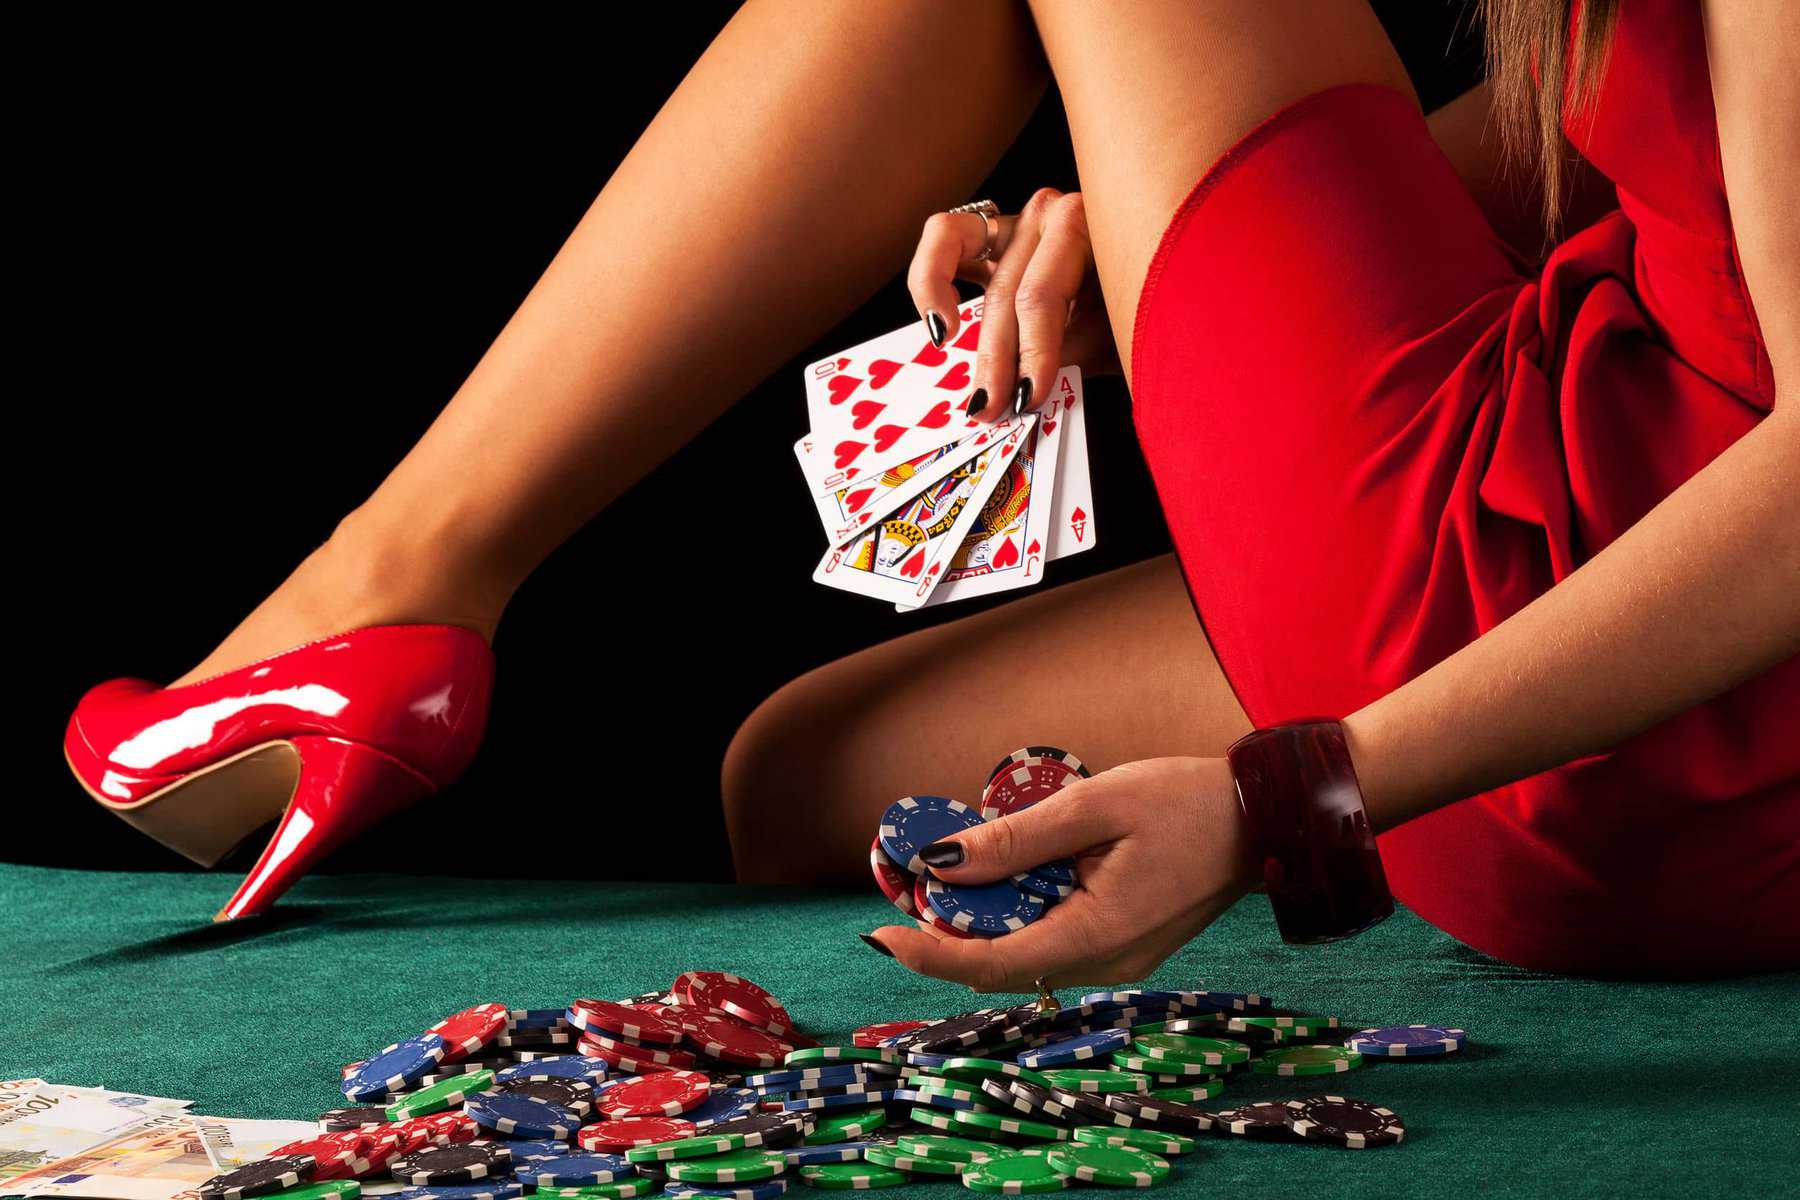 Una bailarina exótica en un vestido rojo sentada en una mesa con fichas de póker y cartas.